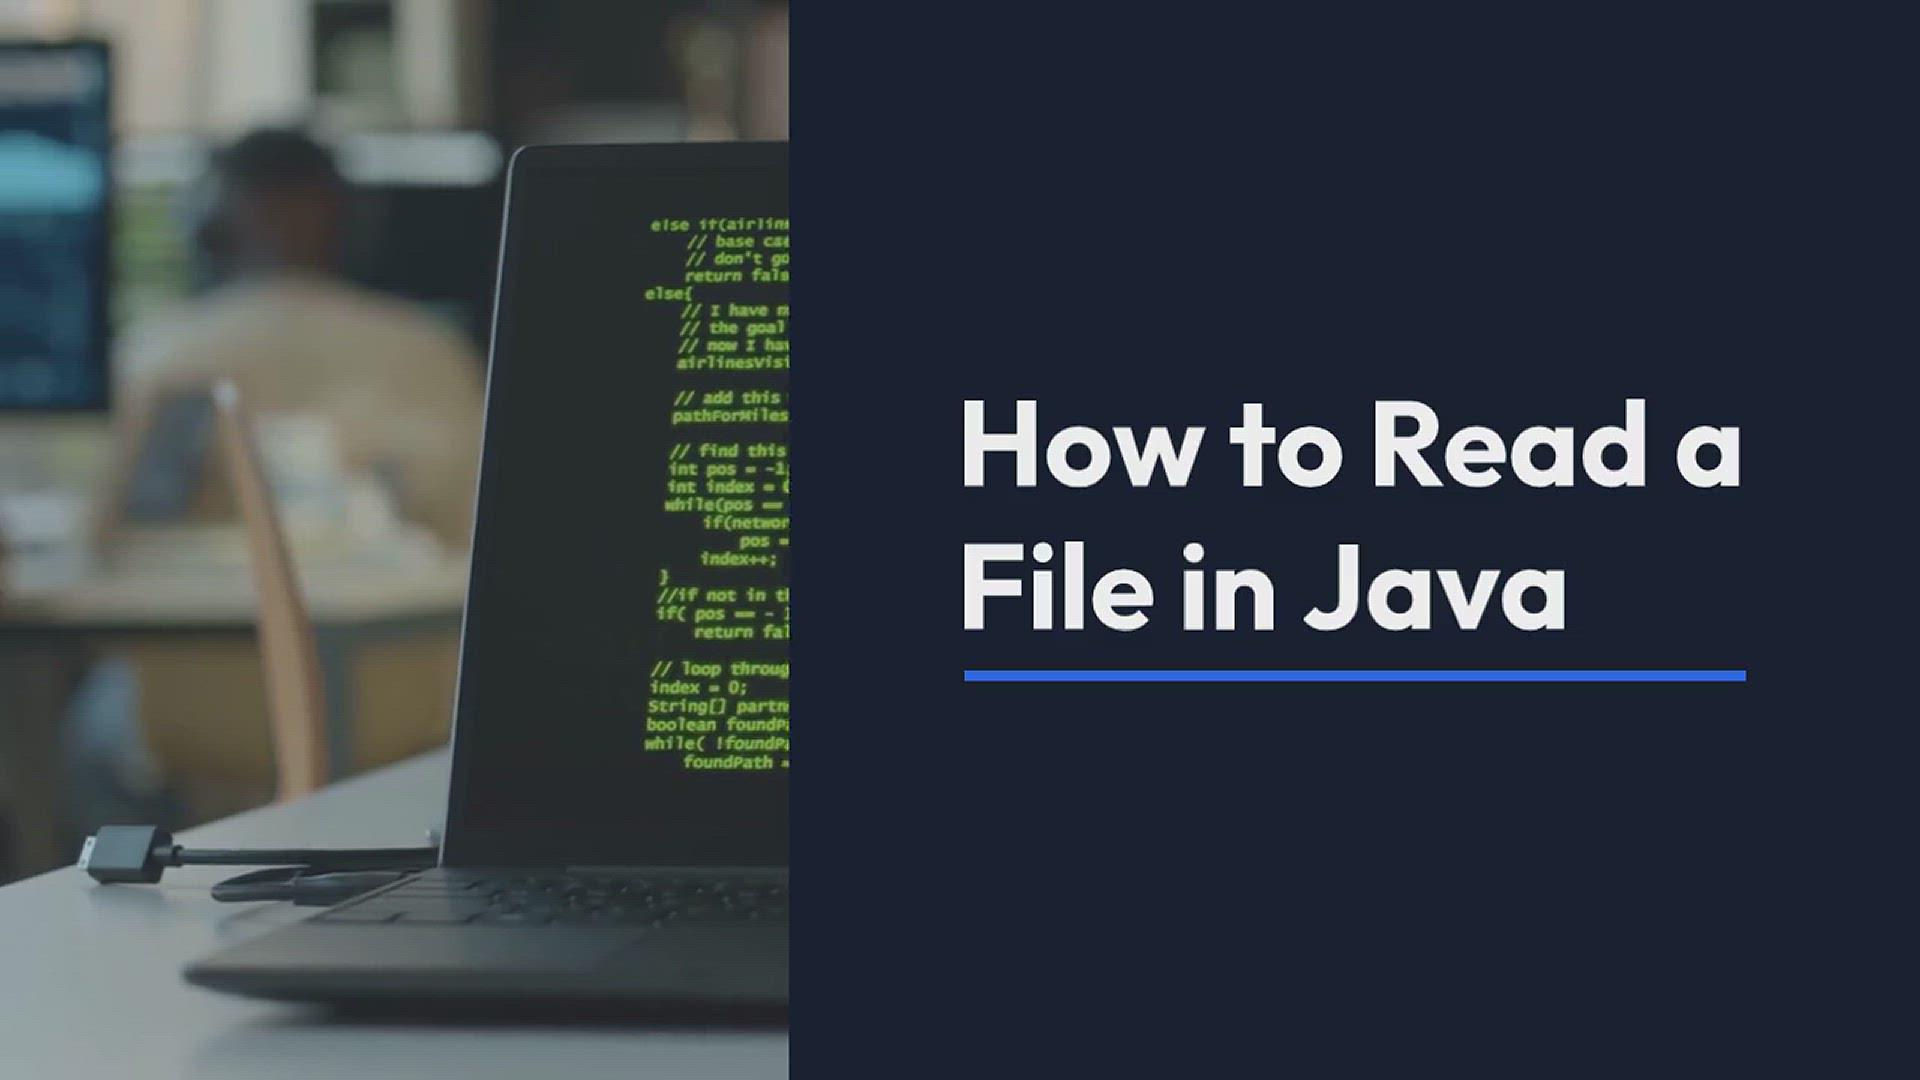 Tìm hiểu cách đọc file trong Java...